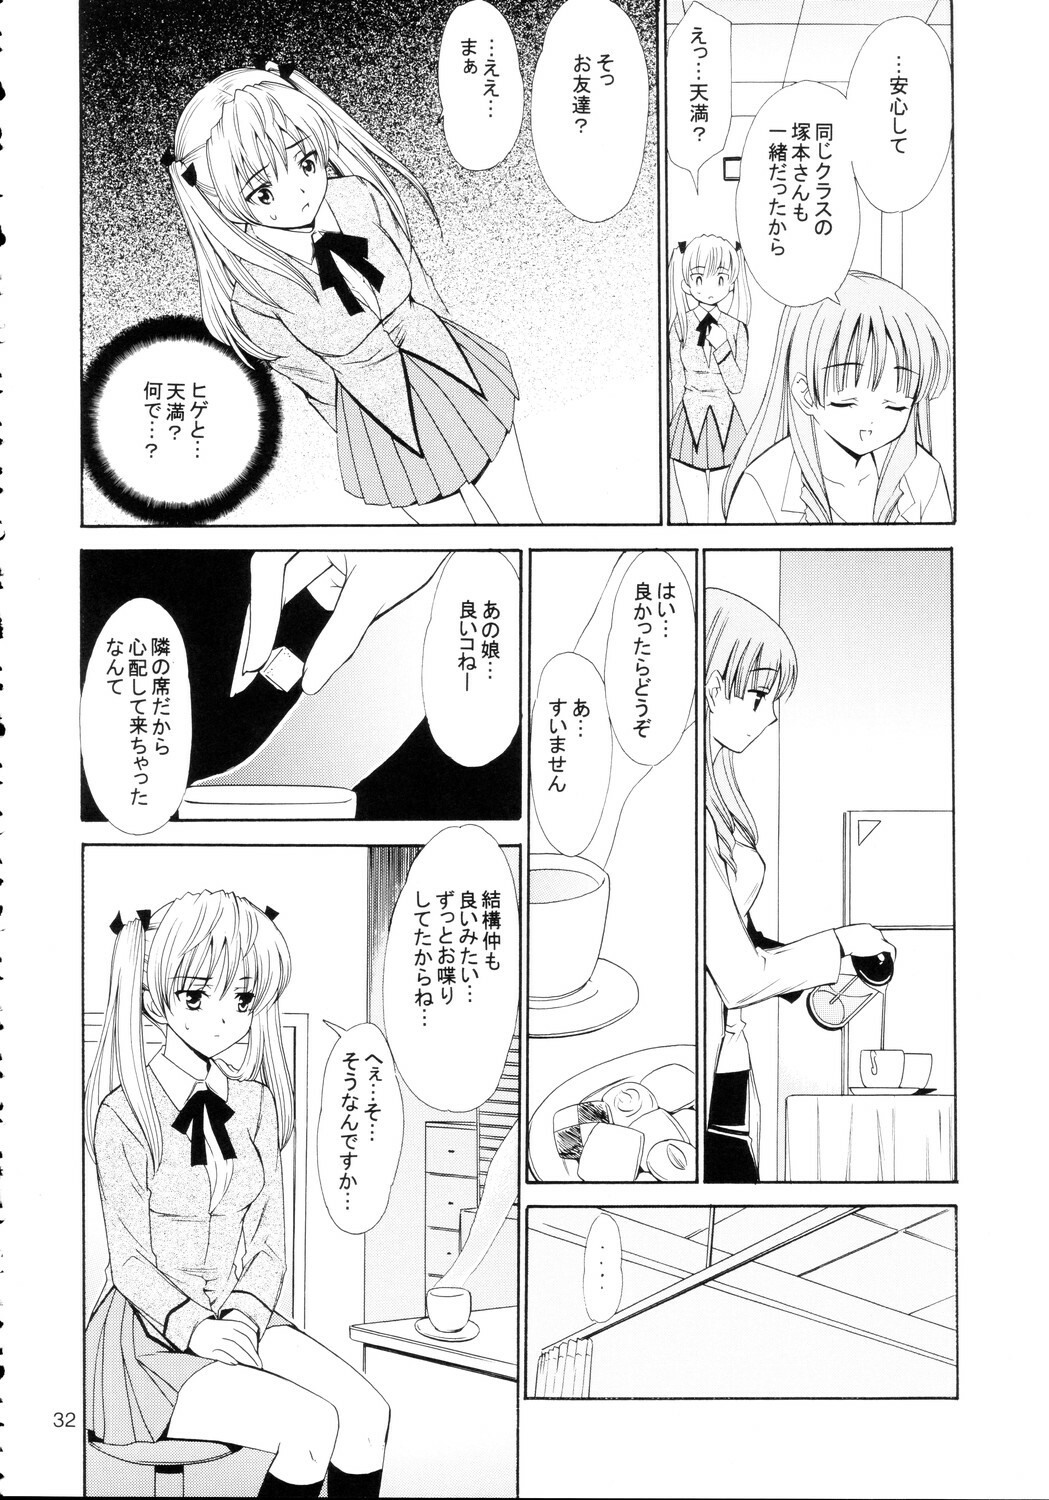 [Teruo Haruo] Hige Seito Harima! 4 (School Rumble) page 32 full